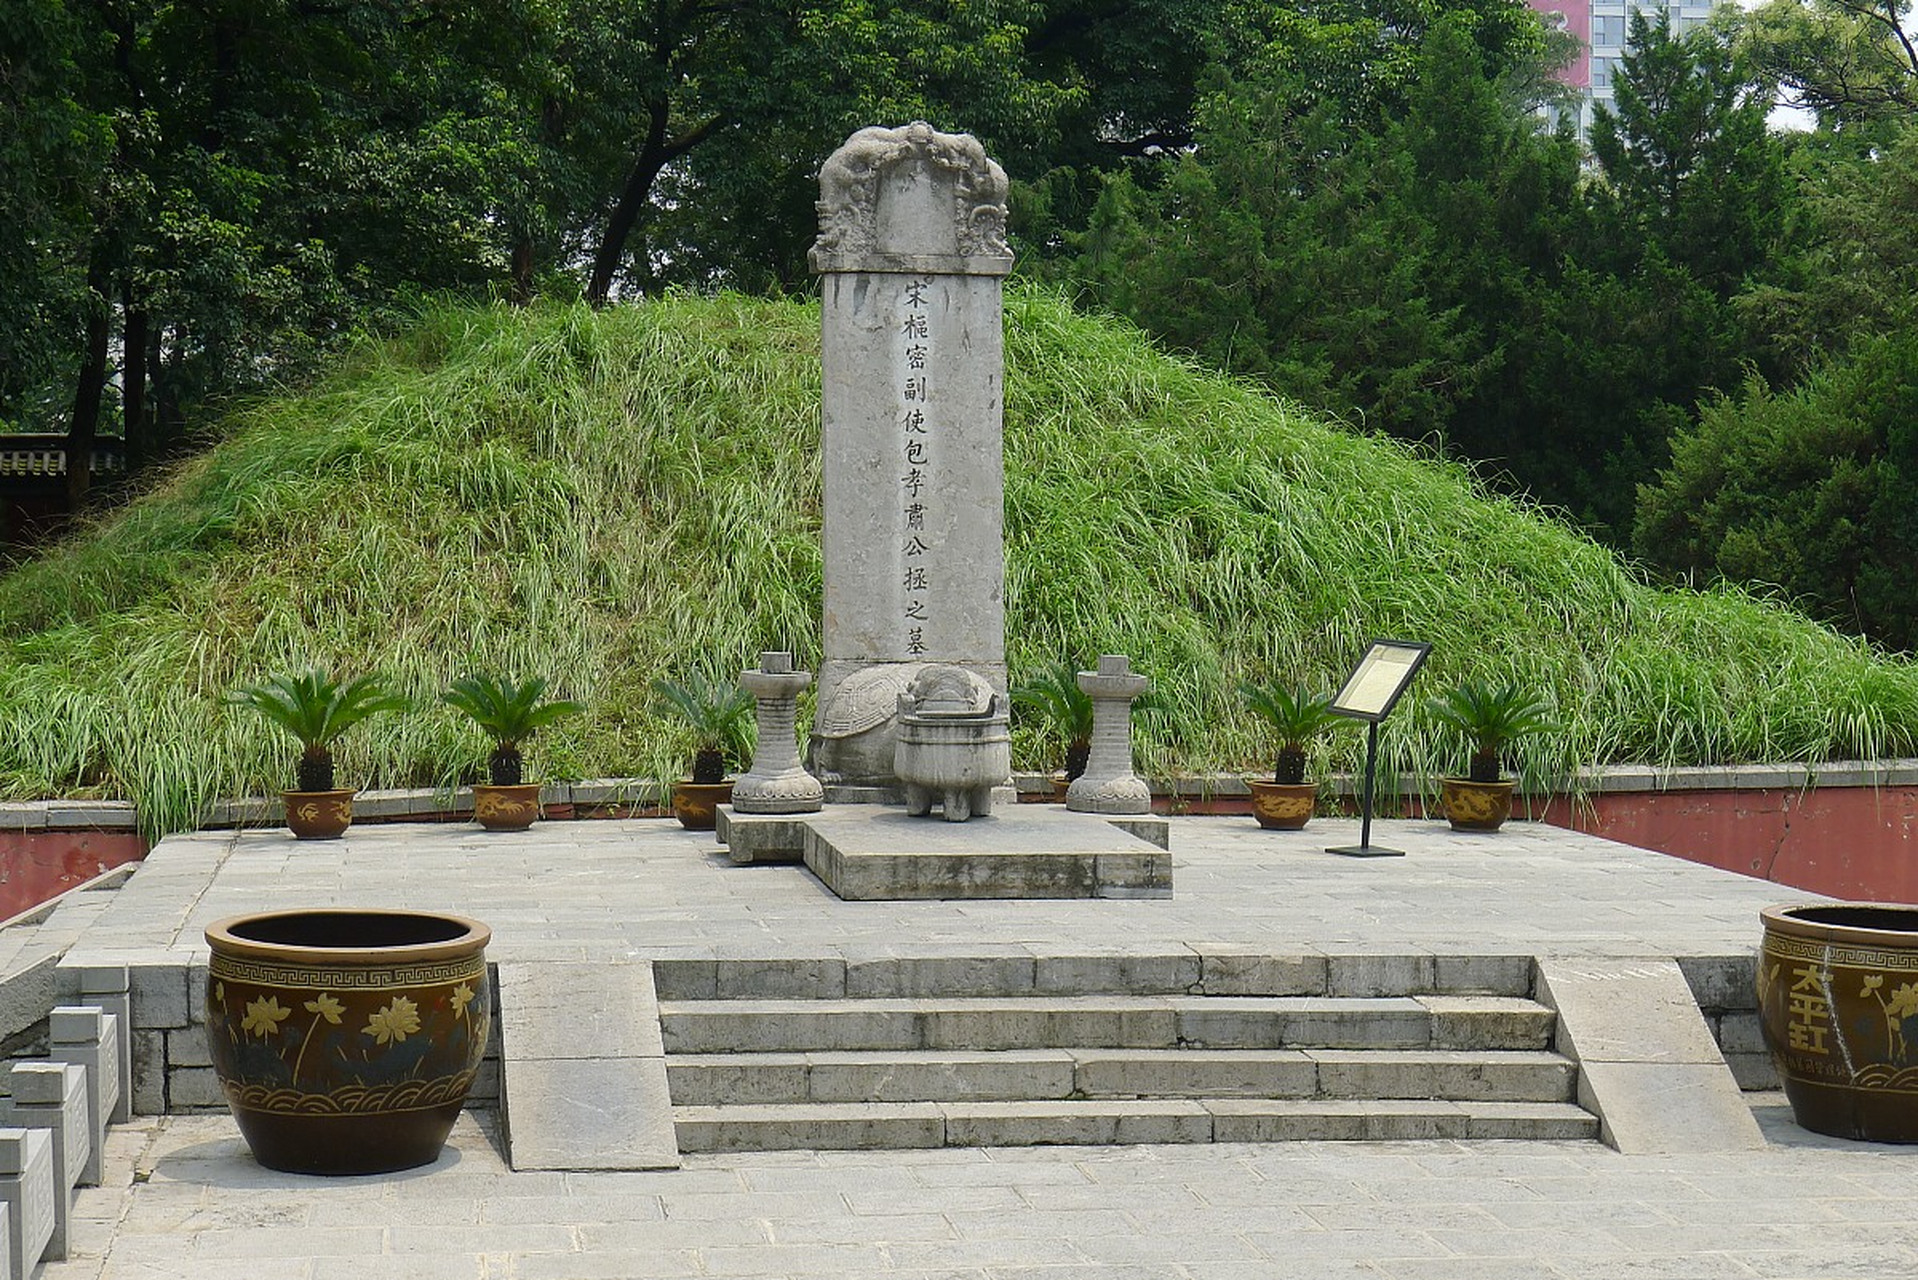 它是对唐朝时期葬于陕西省关中地区长安周边的十八位皇帝陵墓的统称